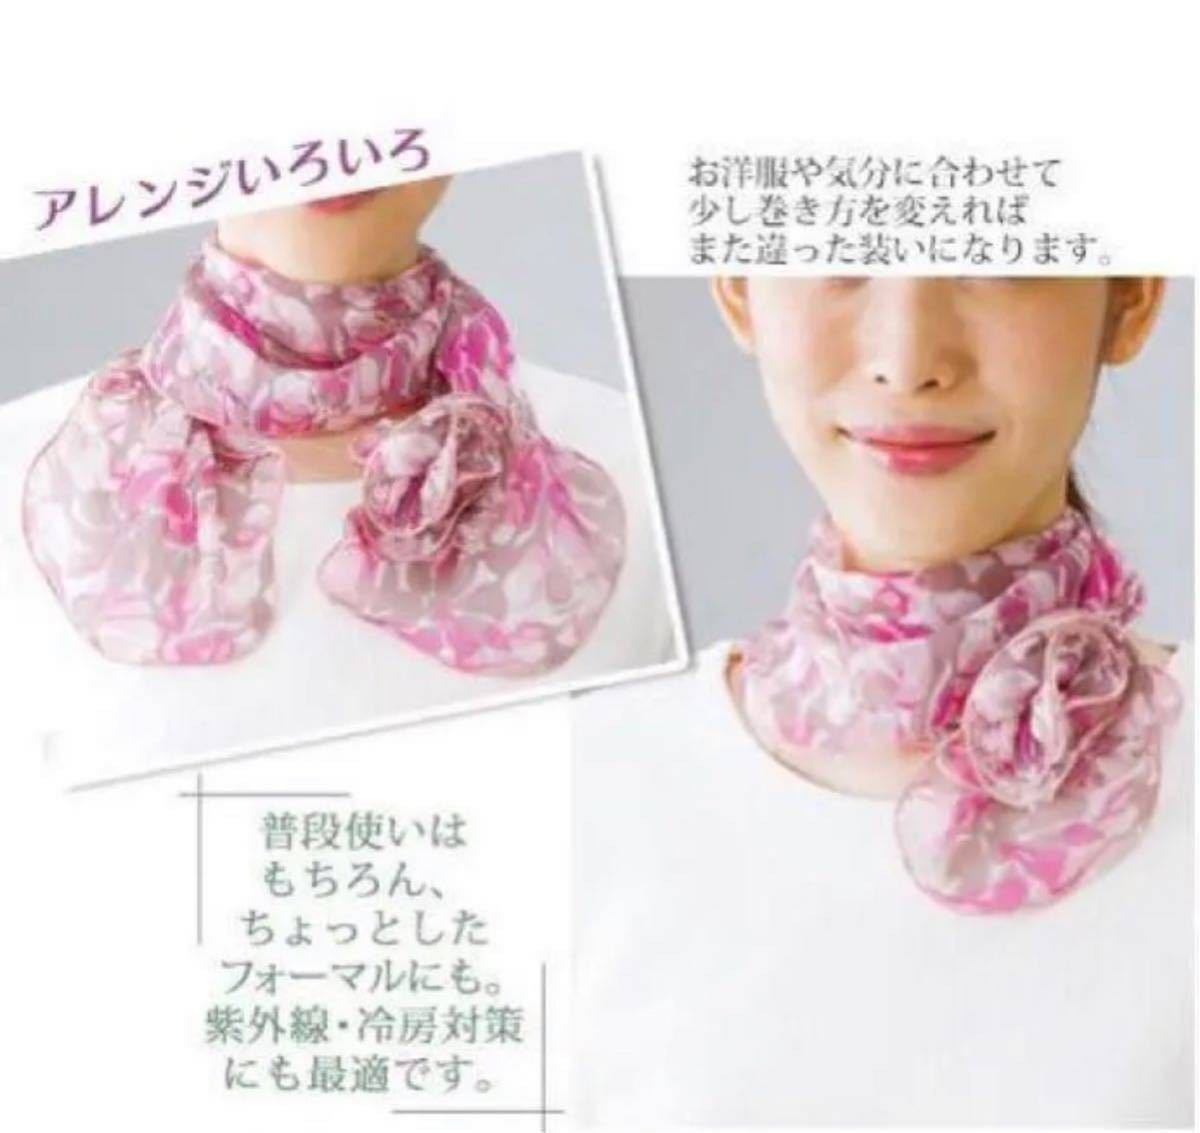 399 регулировка товар цветочный принт шарф розовый цвет 